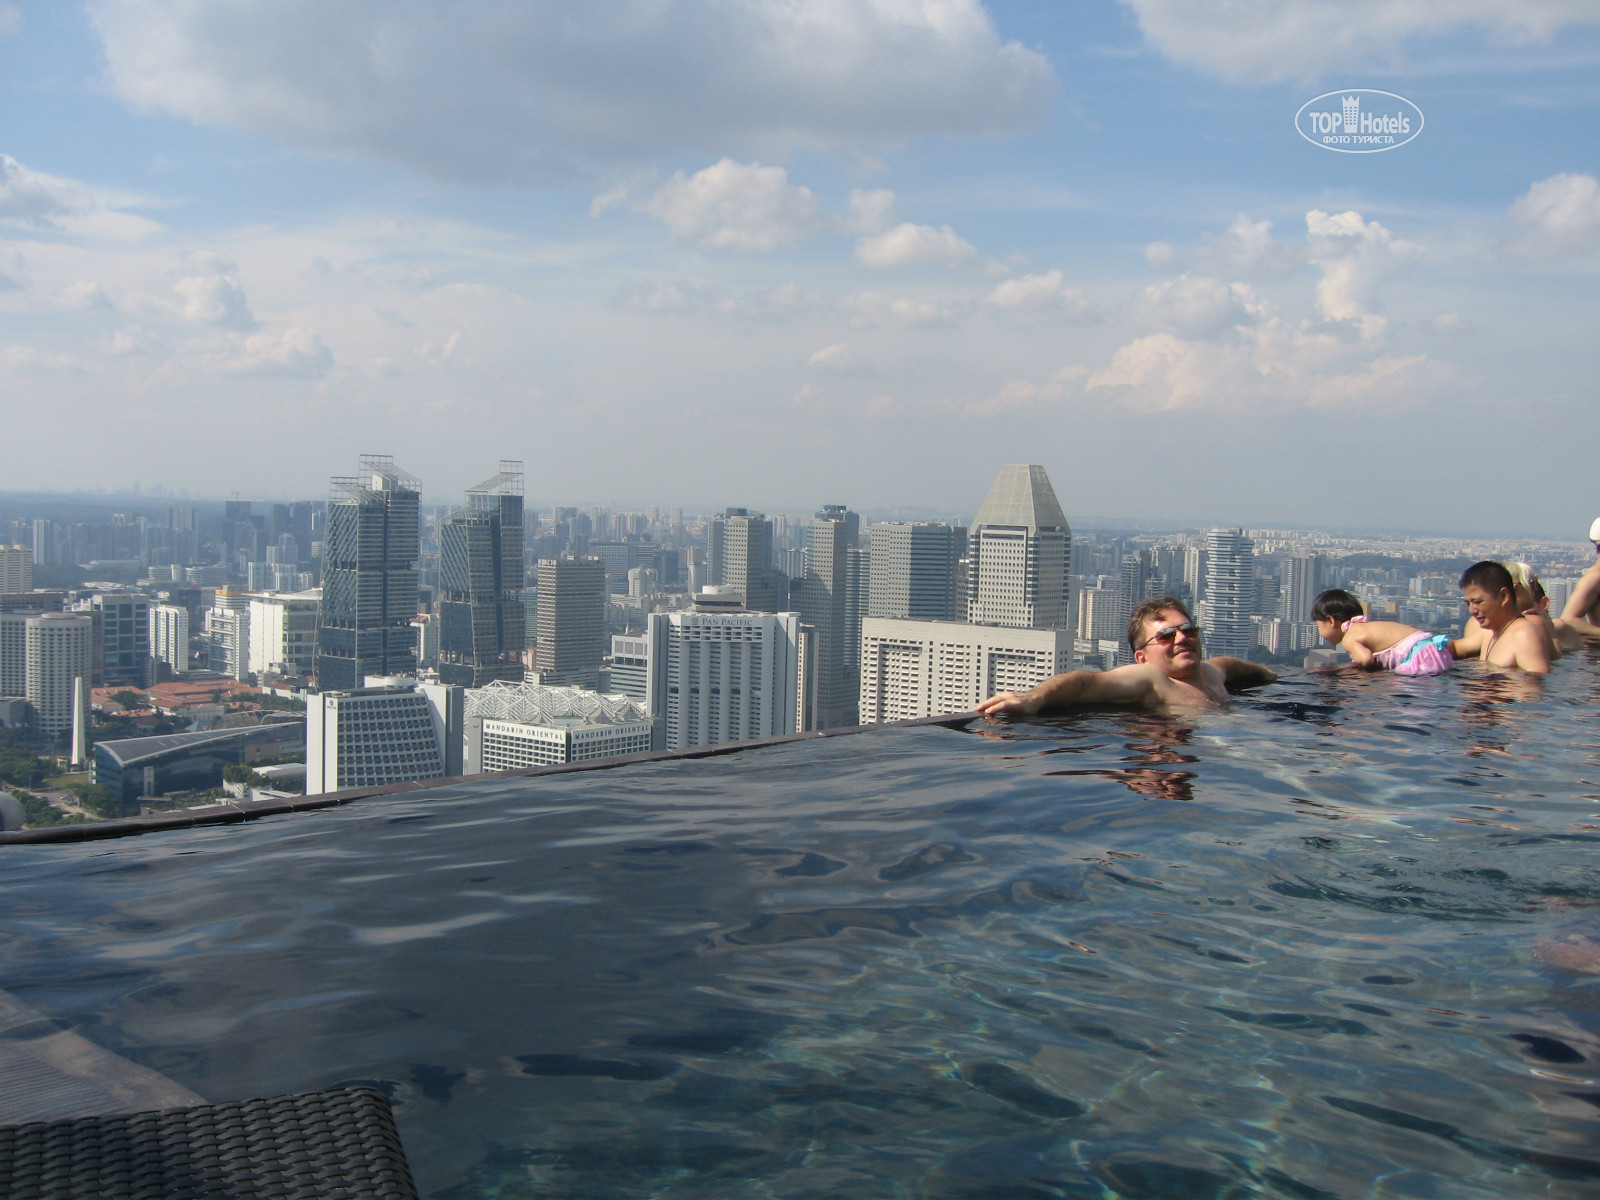 Бассейн в бангкоке. Marina Bay Sands бассейн. Бангкок бассейн на крыше небоскреба. Бангкок отель с бассейном на крыше. Отель в Бангкоке с бассейном на крыше 80.